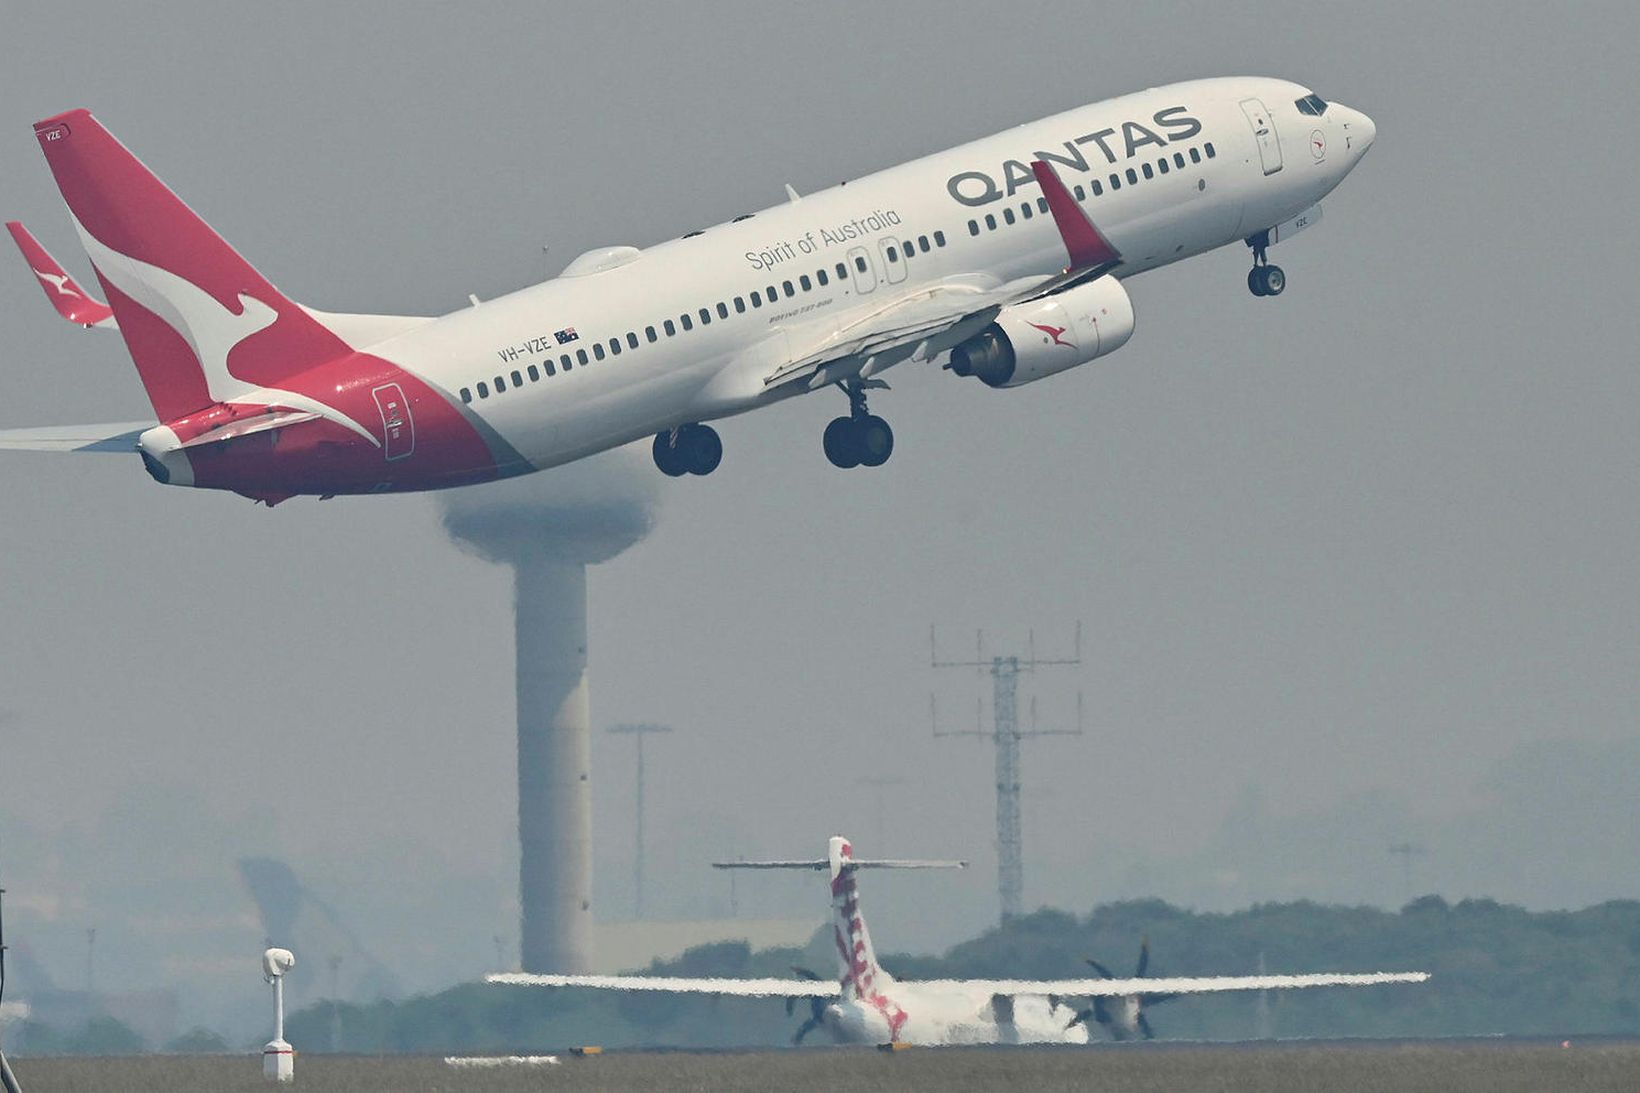 Boeing 737-800 þota Qantas í flugtaki frá Kingsford Smith flugvellinum …